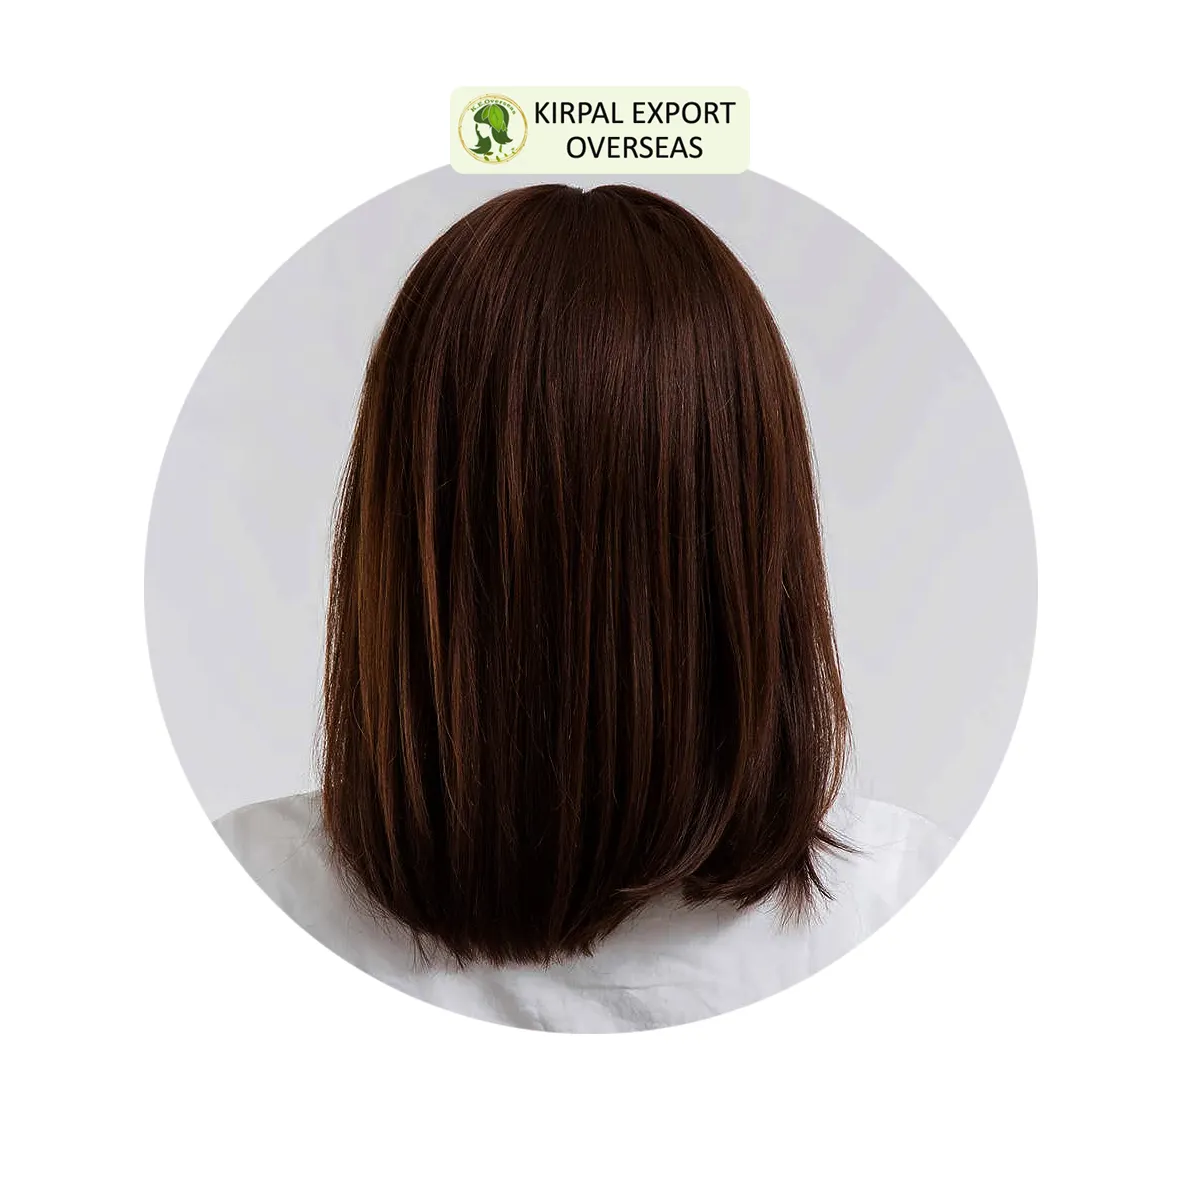 Meist verkaufte Produkte Chemie freie Haarfarbe Bio Braun Henna Pulver Haar färbemittel Hochwertiger Haarpflege hersteller